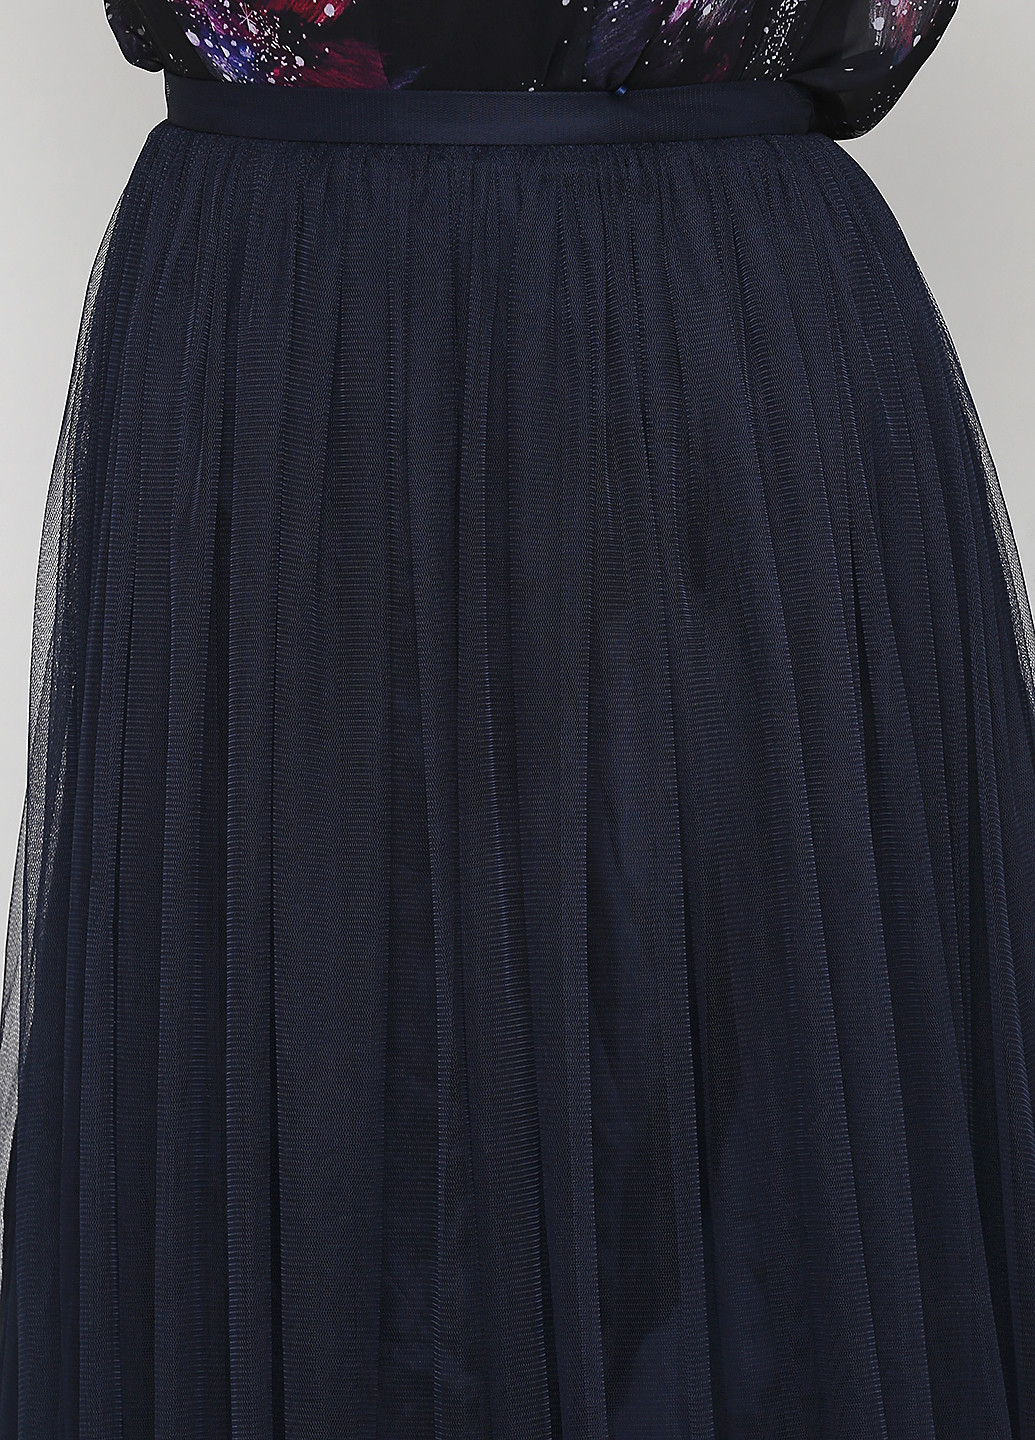 Темно-синяя кэжуал однотонная юбка Adrianna Papell клешированная